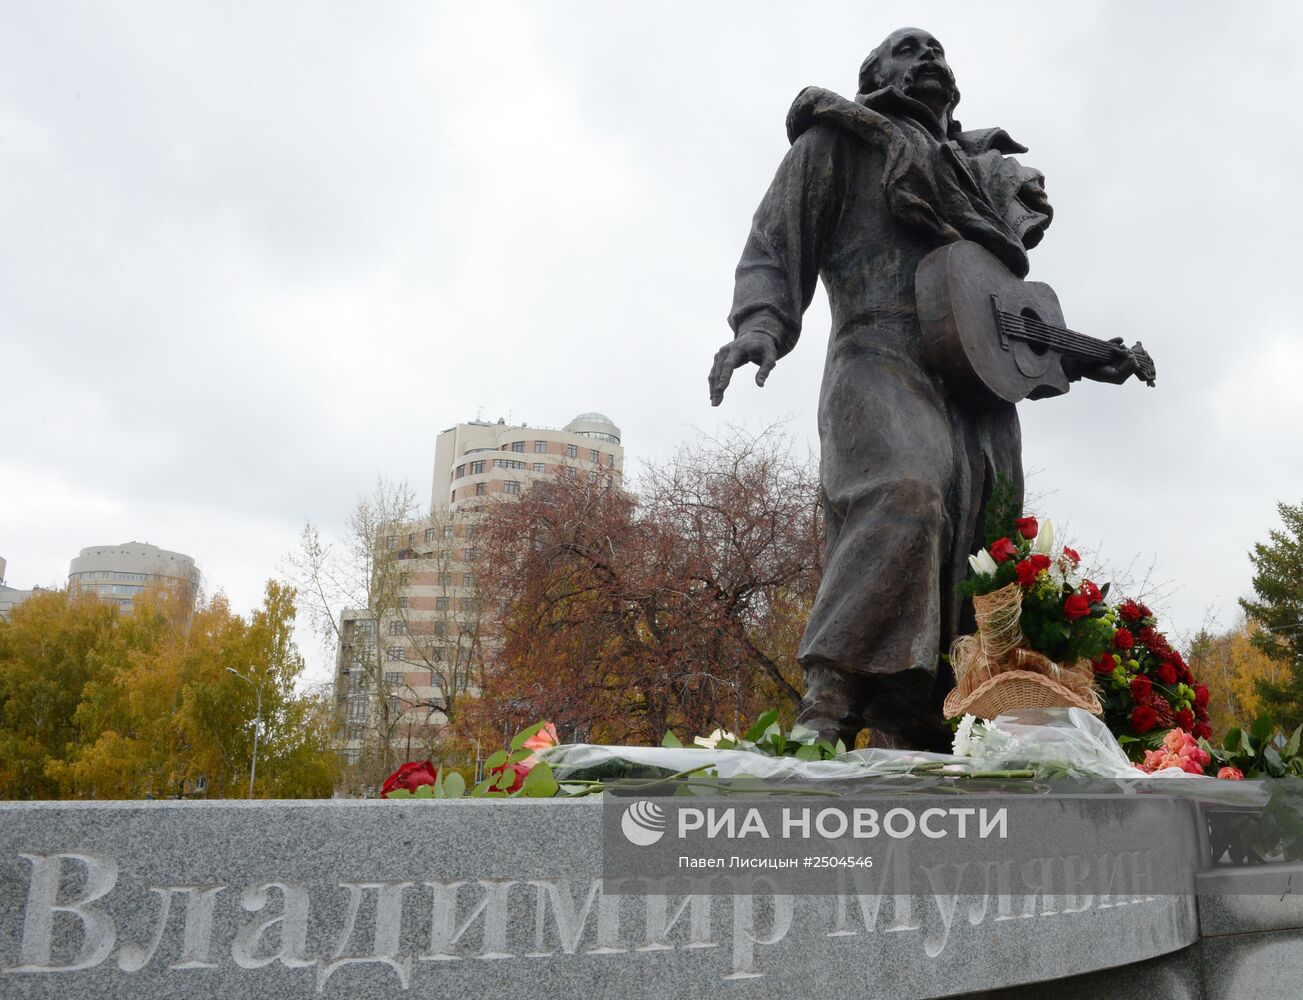 Открытие памятника музыканту Владимиру Мулявину в Екатеринбурге